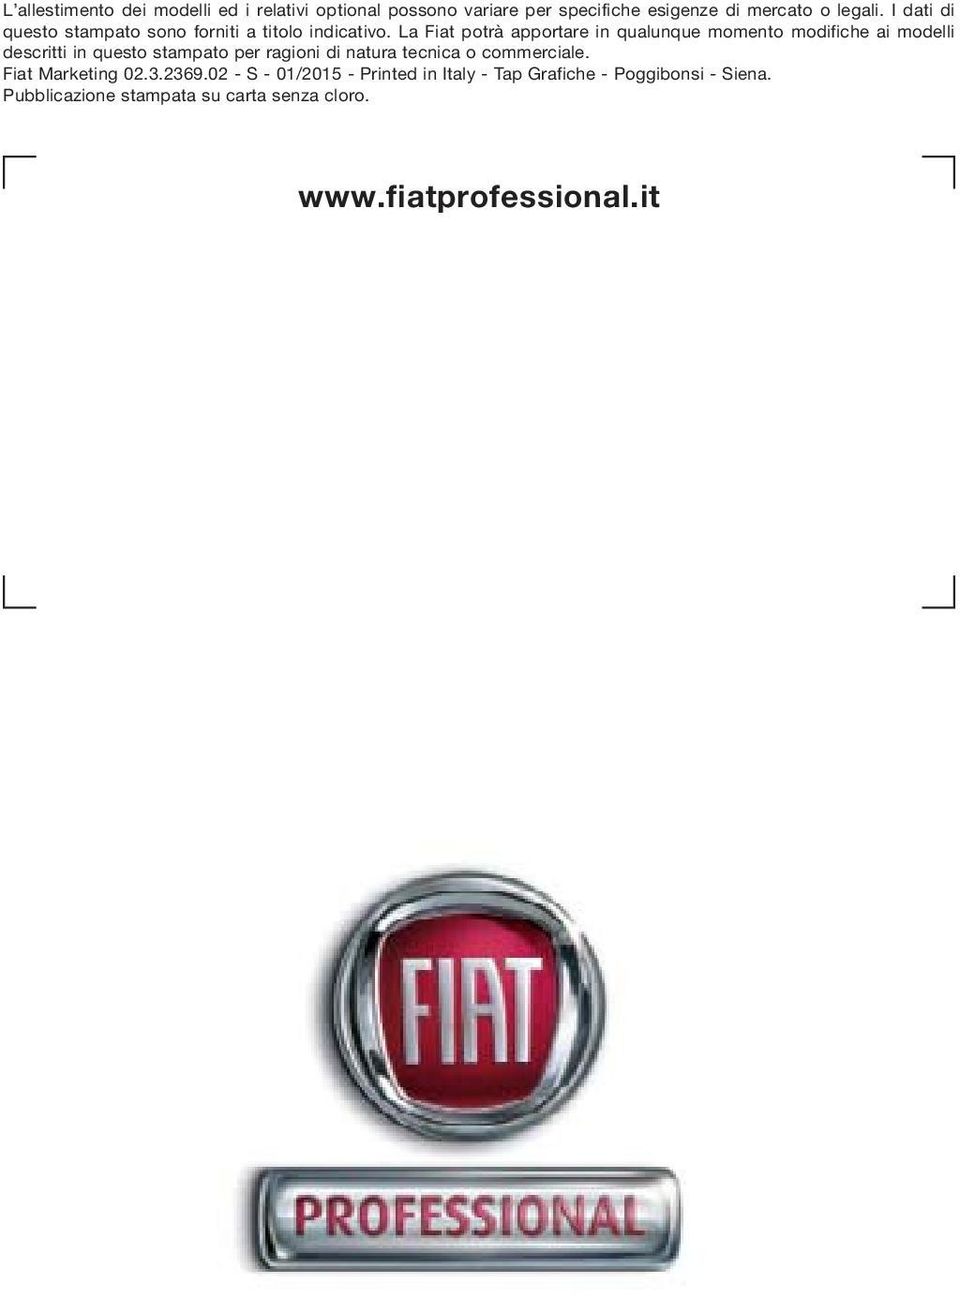 La Fiat potrà apportare in qualunque momento modifiche ai modelli descritti in questo stampato per ragioni di natura